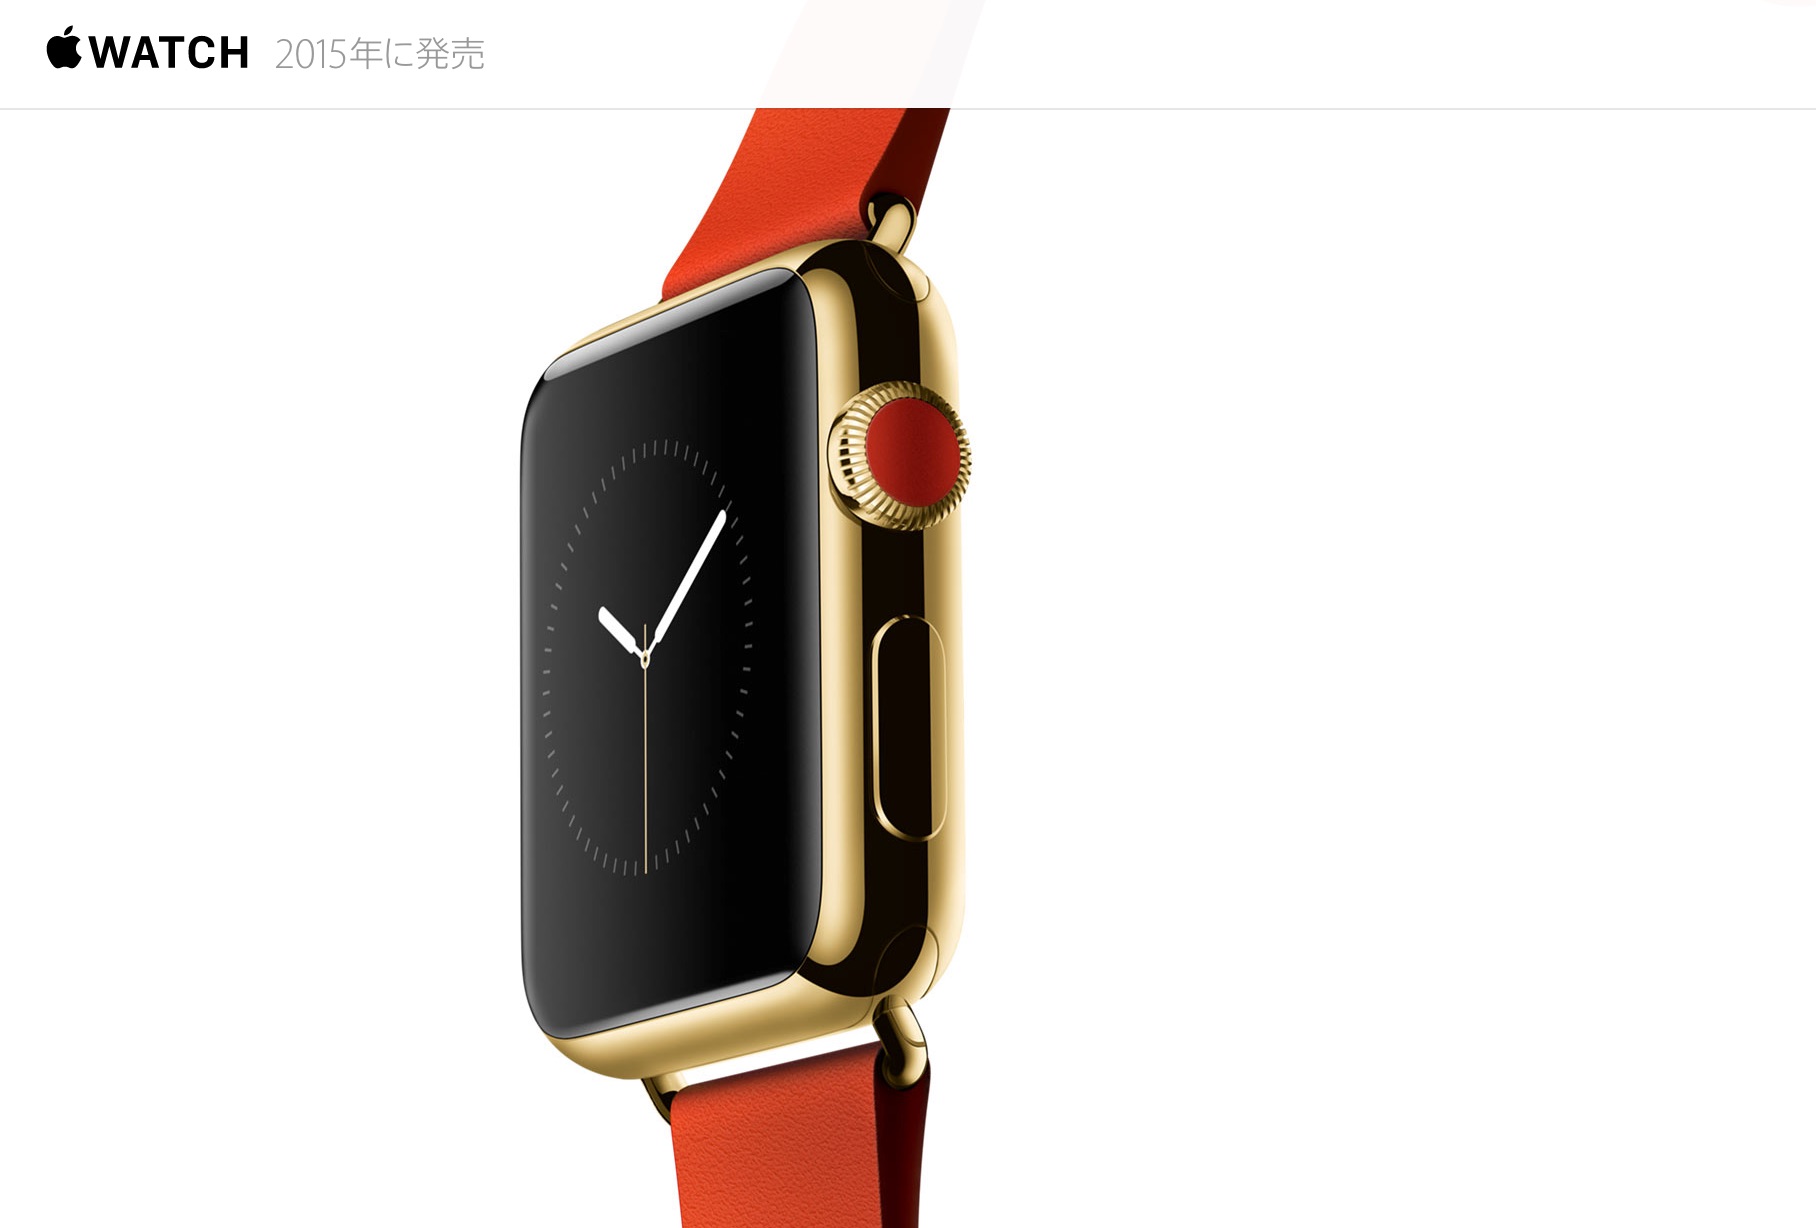 Apple Watchの発売日は2015年発売とアナウンスされている